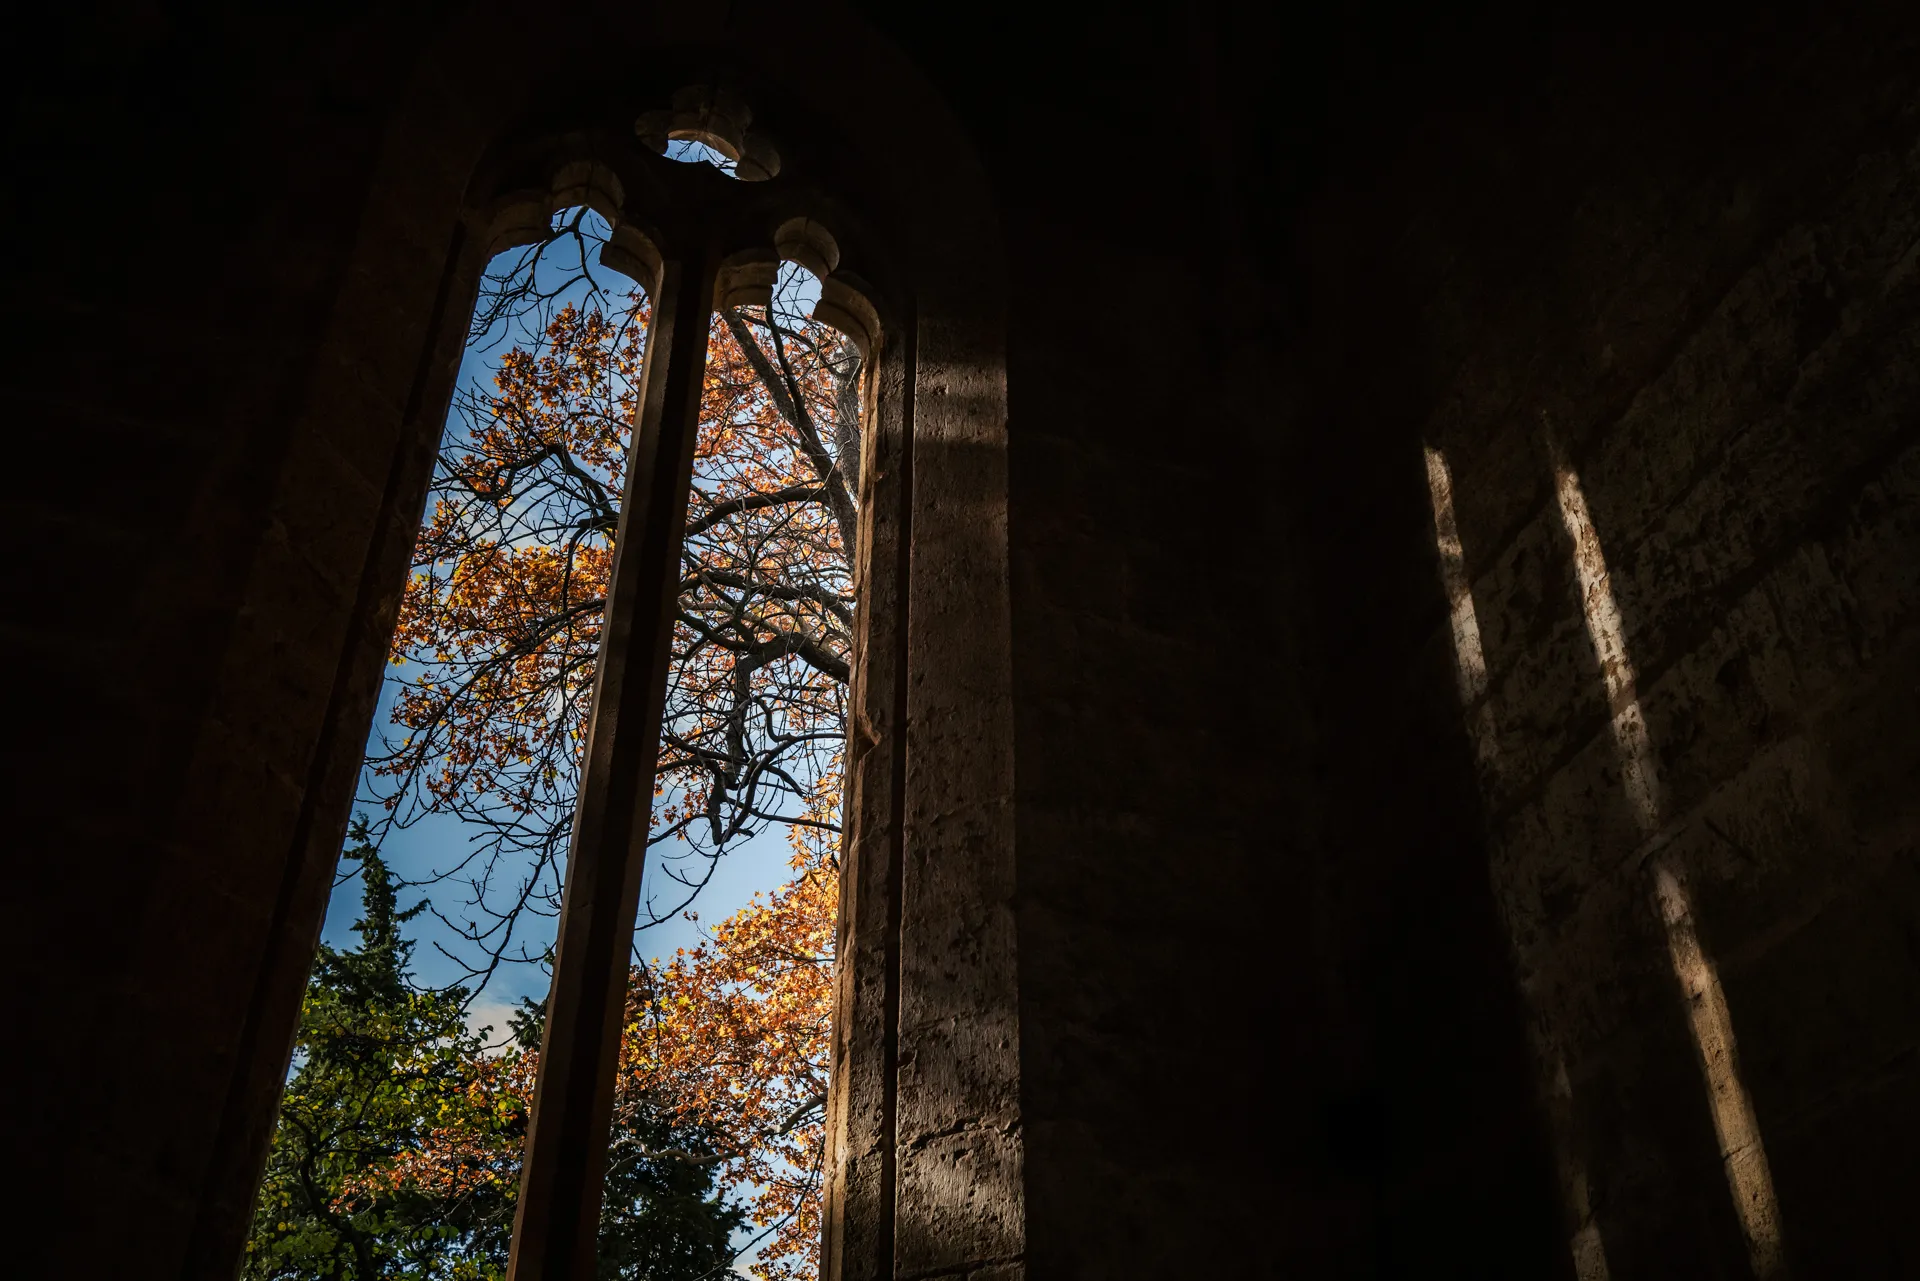 jeu de lumière à l'abbaye de Valmagne en automne